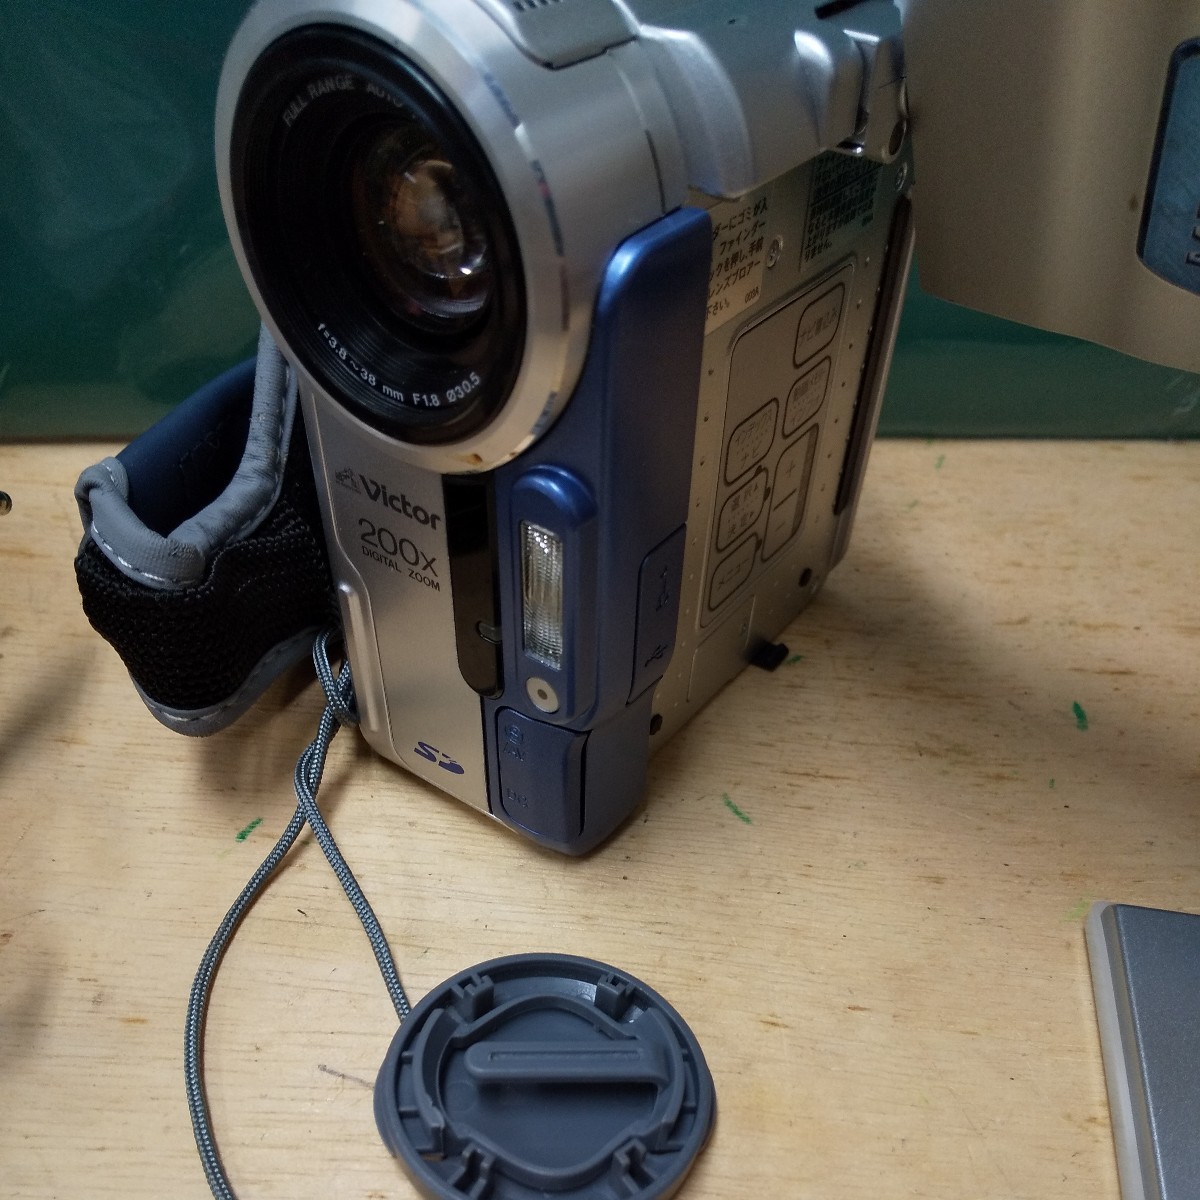 Victor mega pixel gr-dx115 портфель аккумулятор адаптор дистанционный пульт электризация проверка стоимость доставки 520 видео камера кассетная лента sd карта фотоснимок 